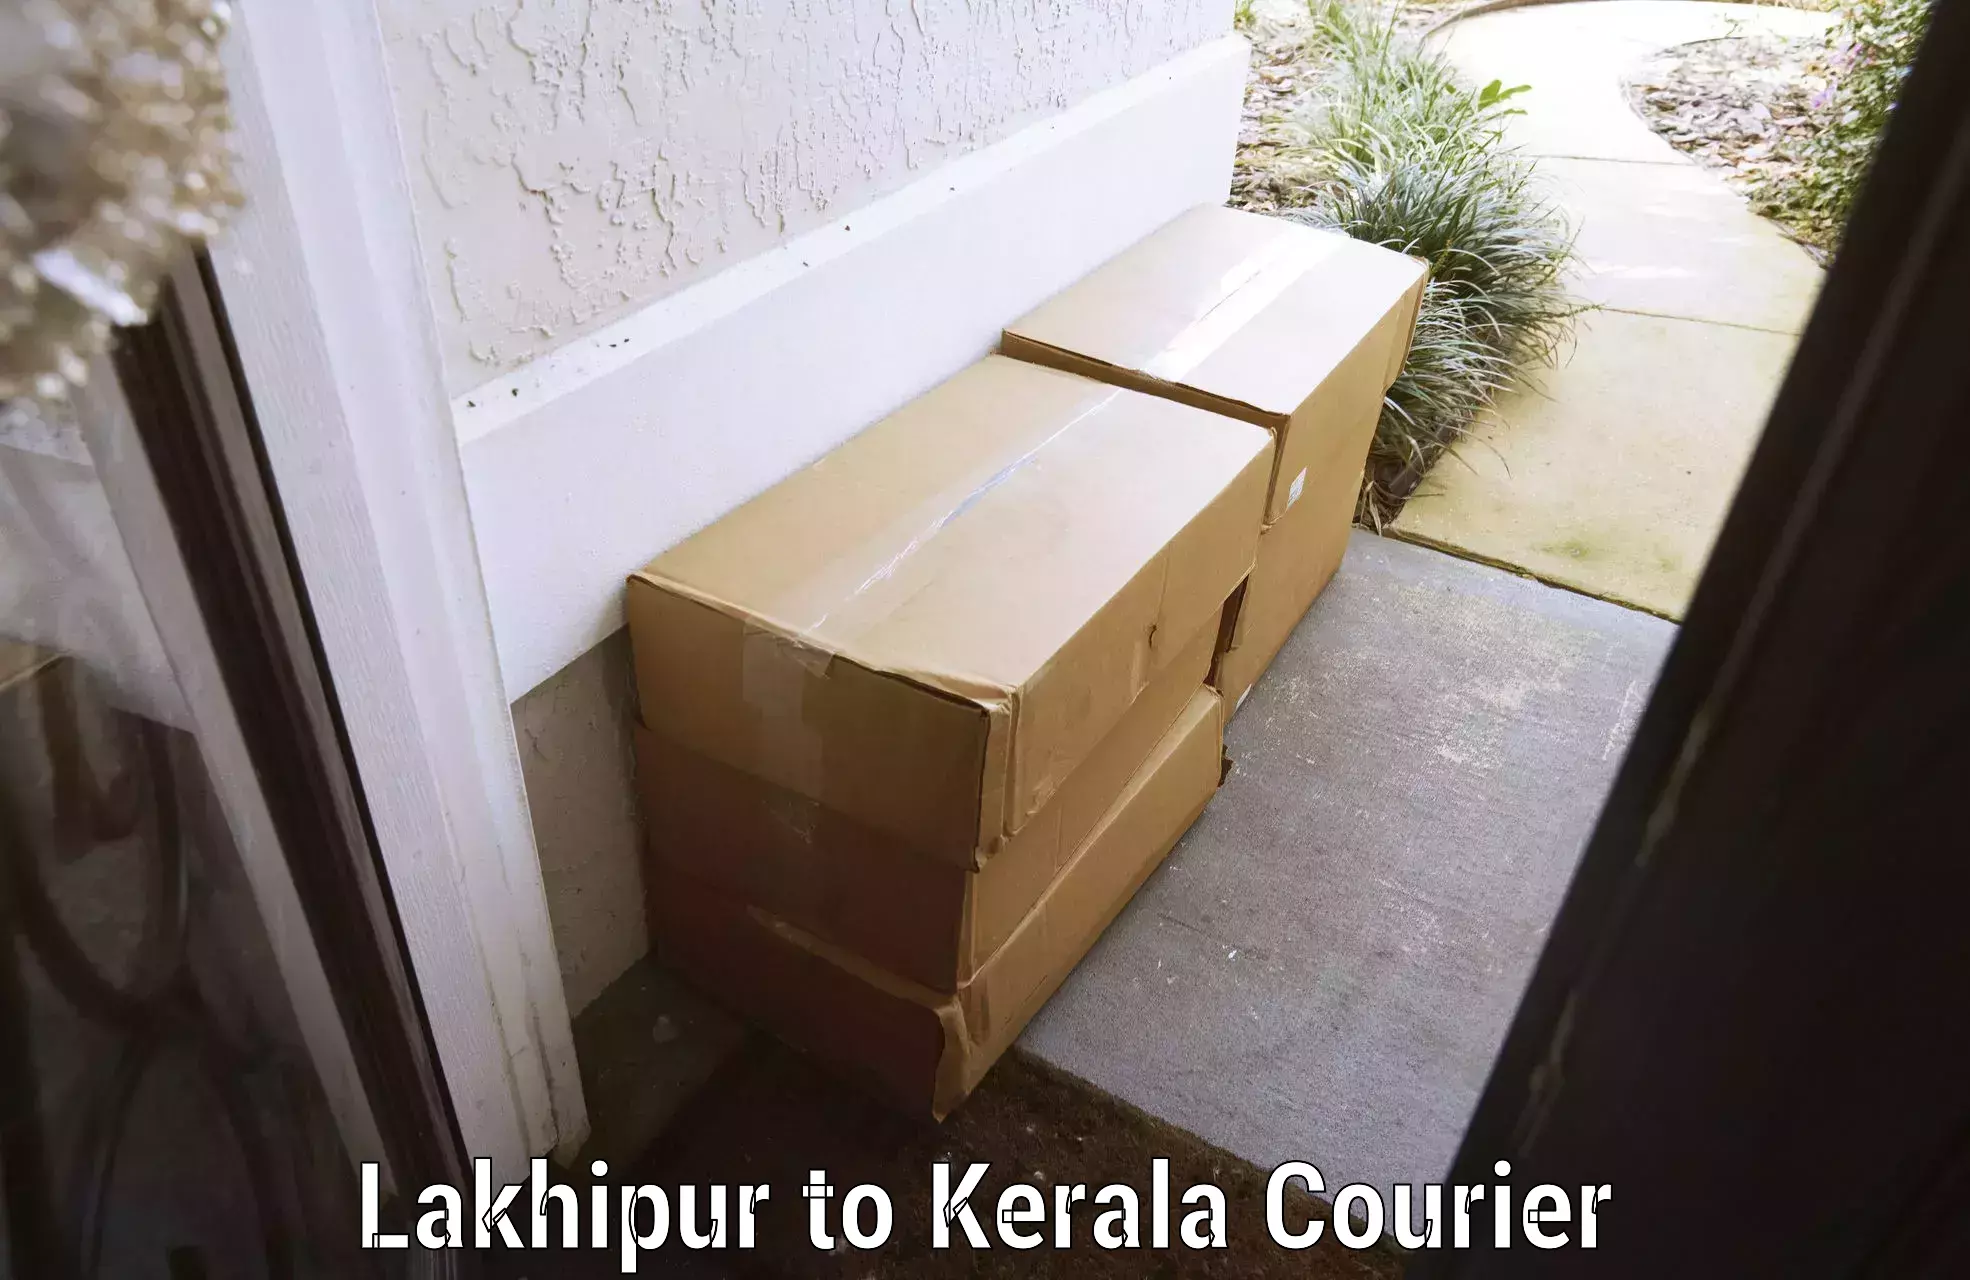 Quick baggage pickup Lakhipur to IIIT Kottayam